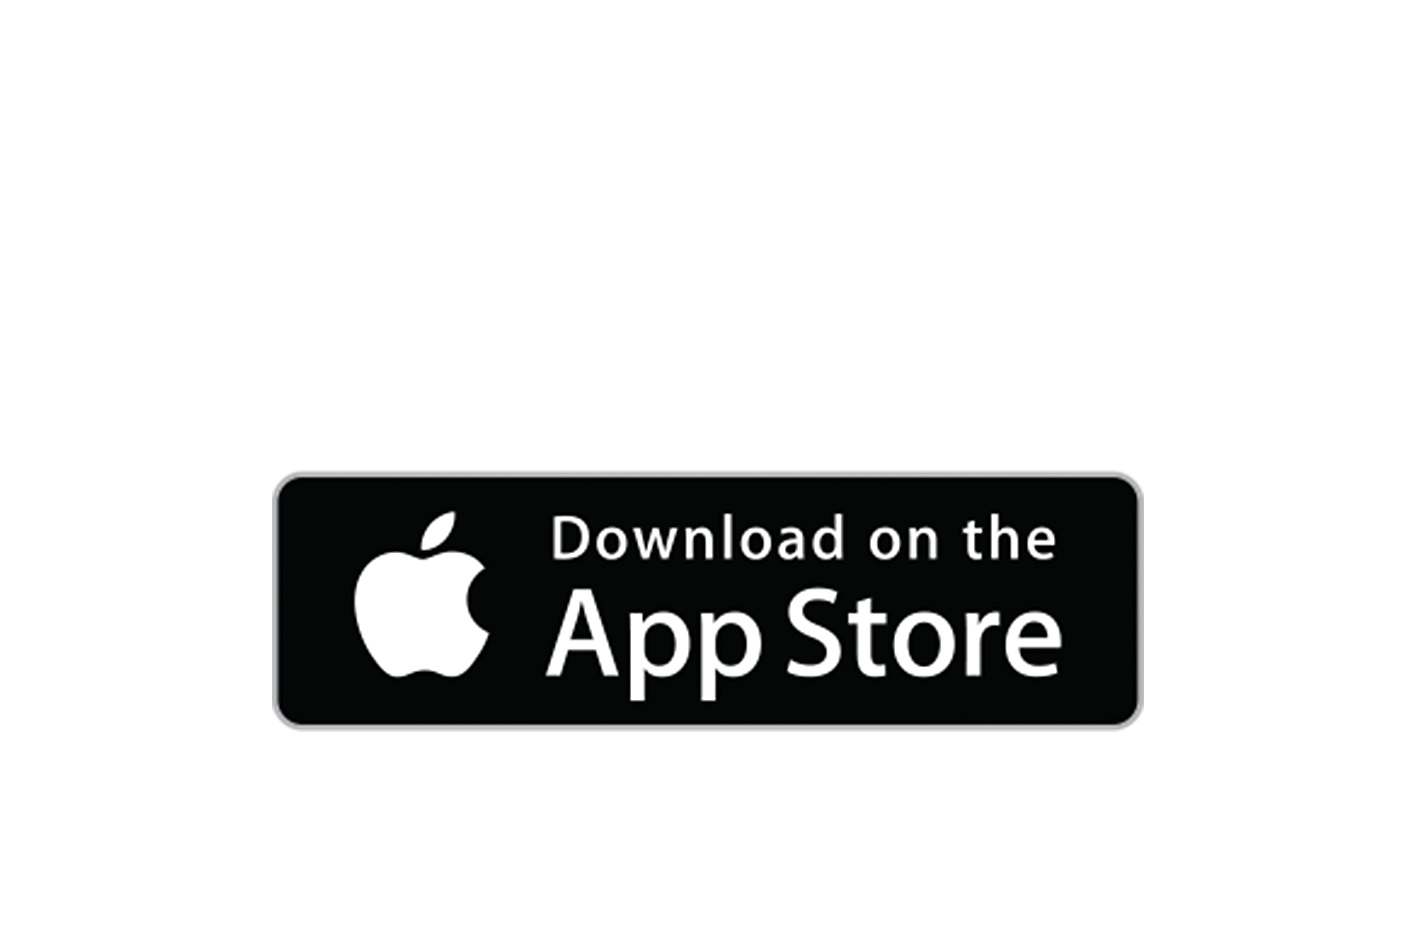 Imagen de un logotipo de Apple App Store